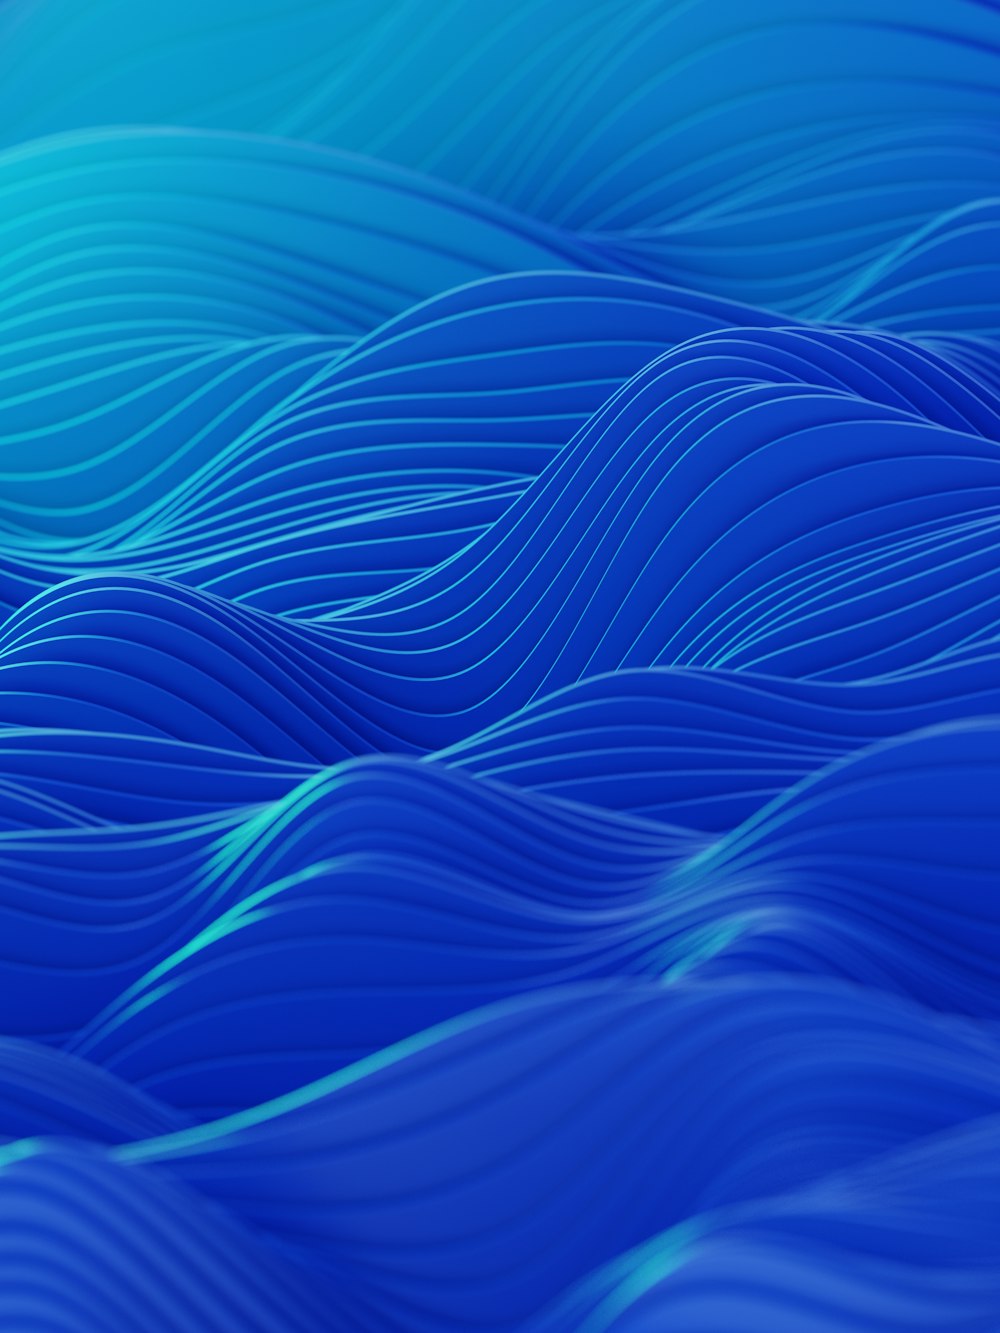 Un fondo azul abstracto con líneas onduladas